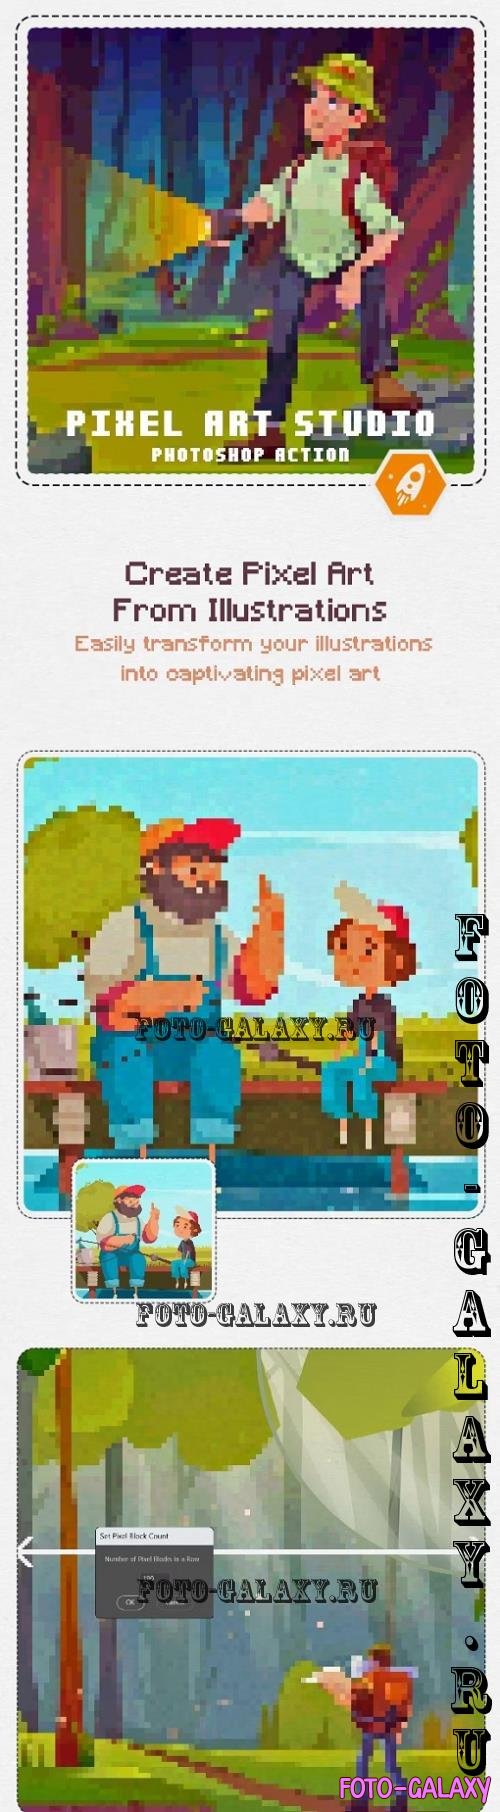 Pixel Art Studio - Pixel Art Effect Action - 49018643